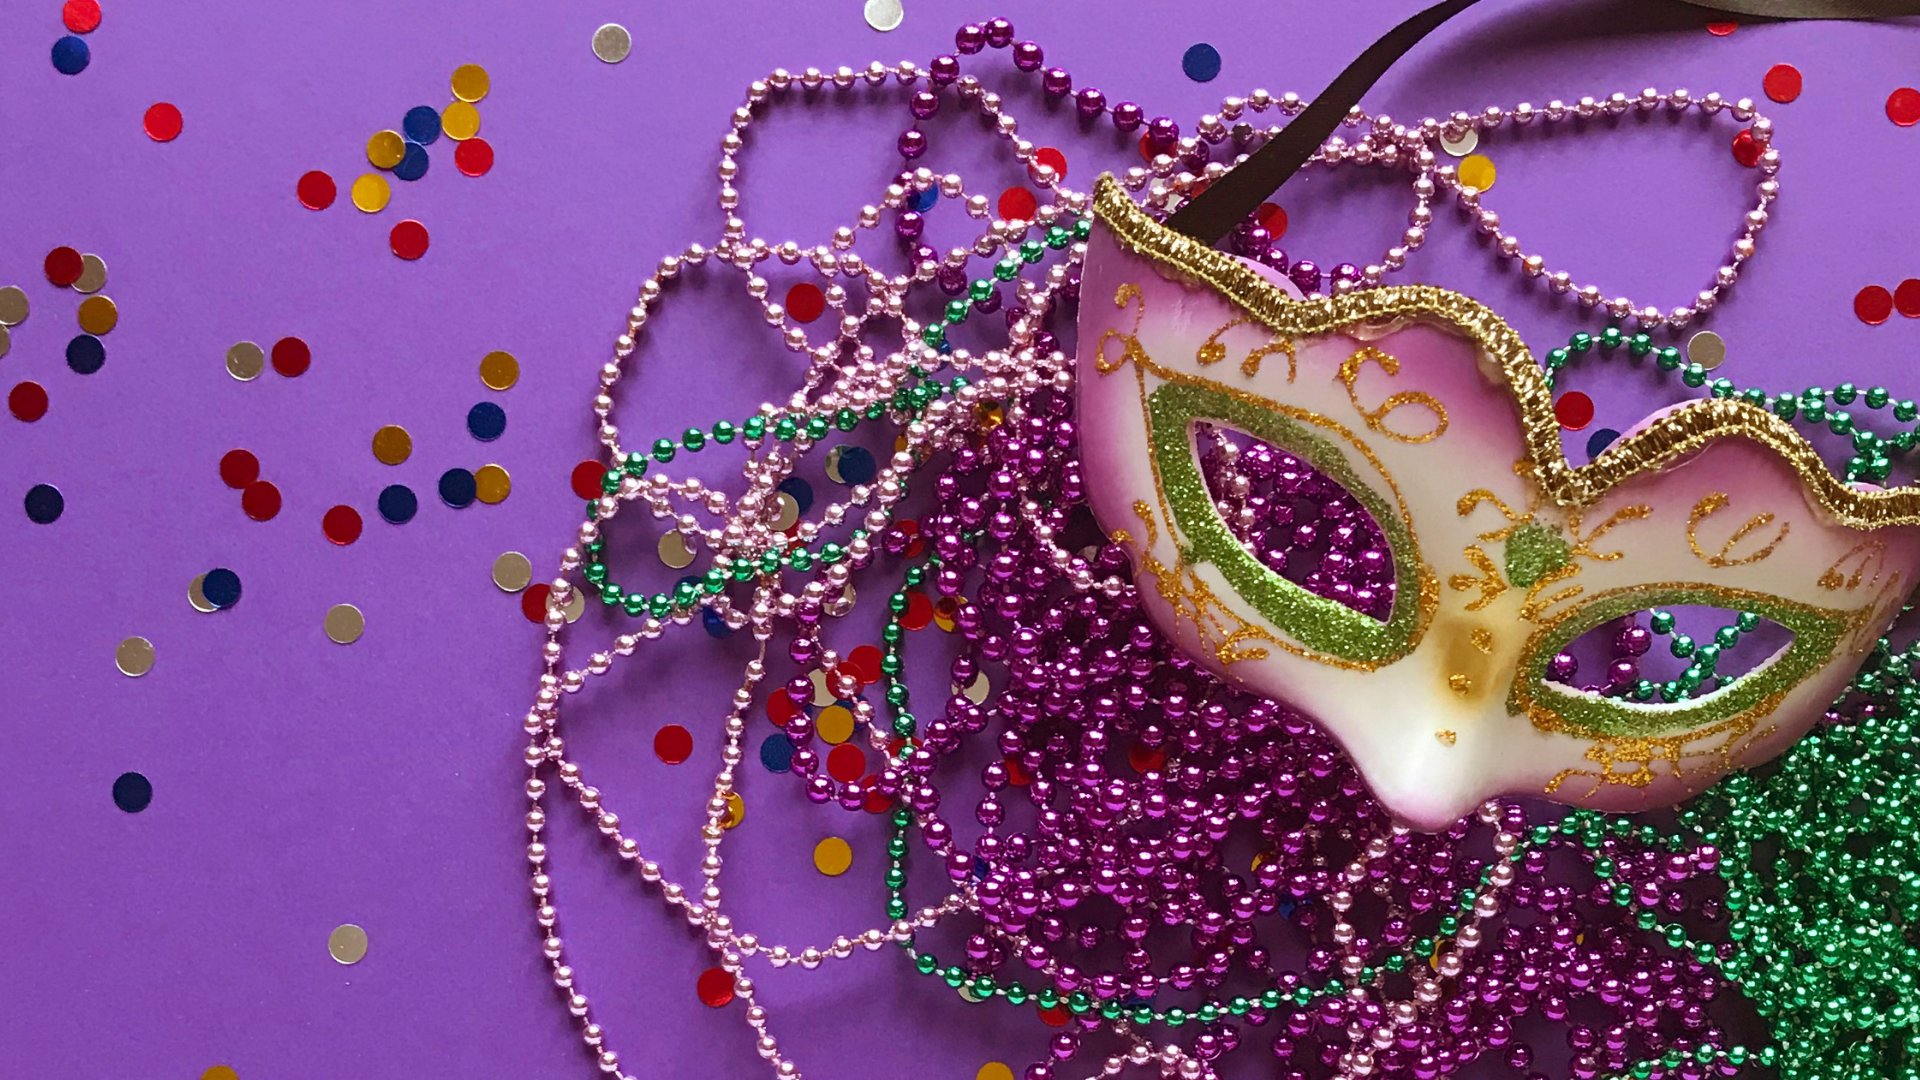 Máscara de carnaval no fundo roxo com confetes e colares coloridos de conta